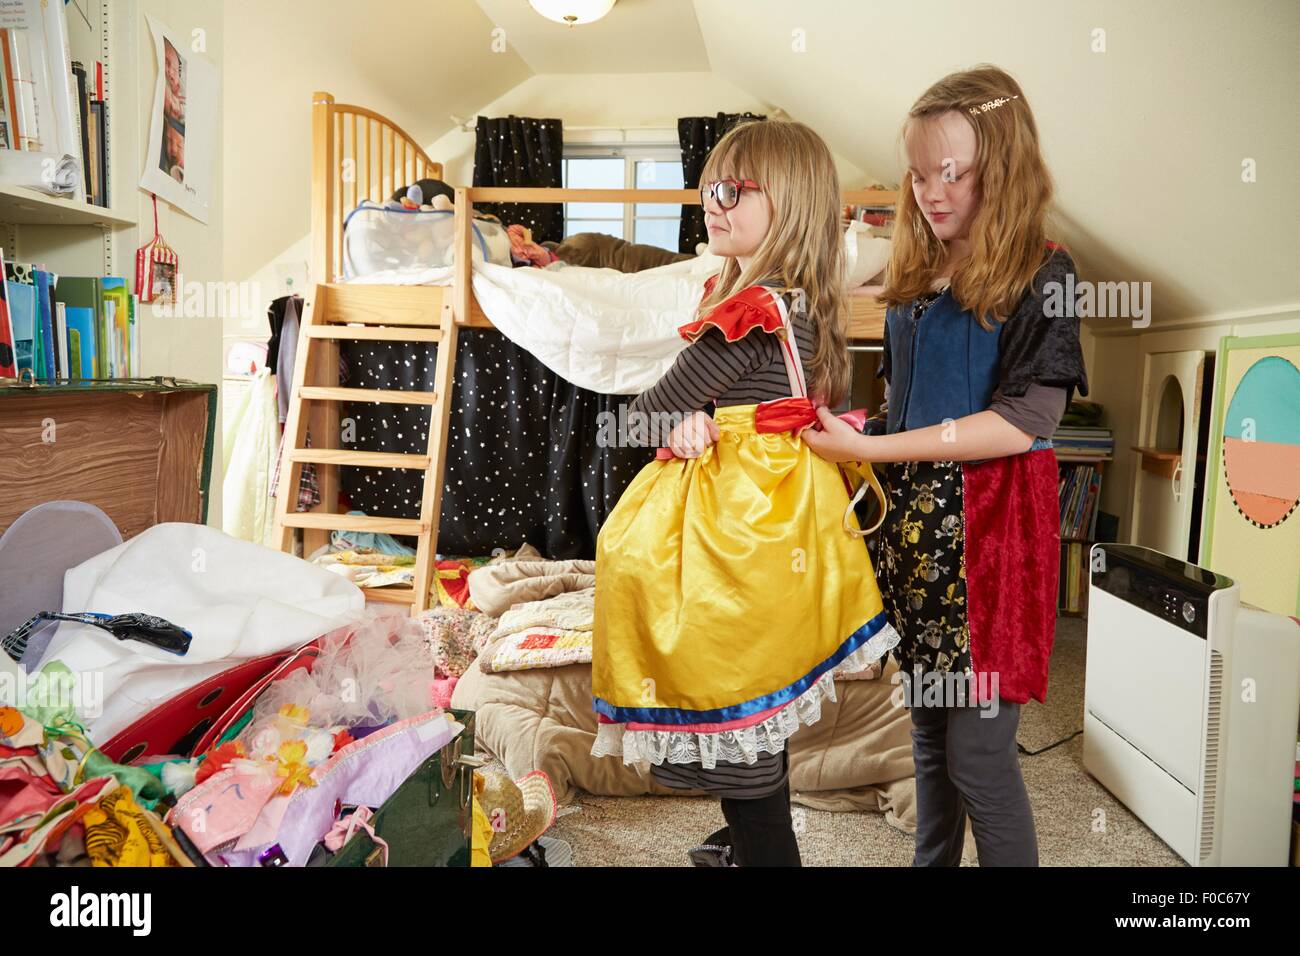 Zwei Schwestern spielen Anzieh, einer hilft dem anderen Kleid befestigen Stockfoto